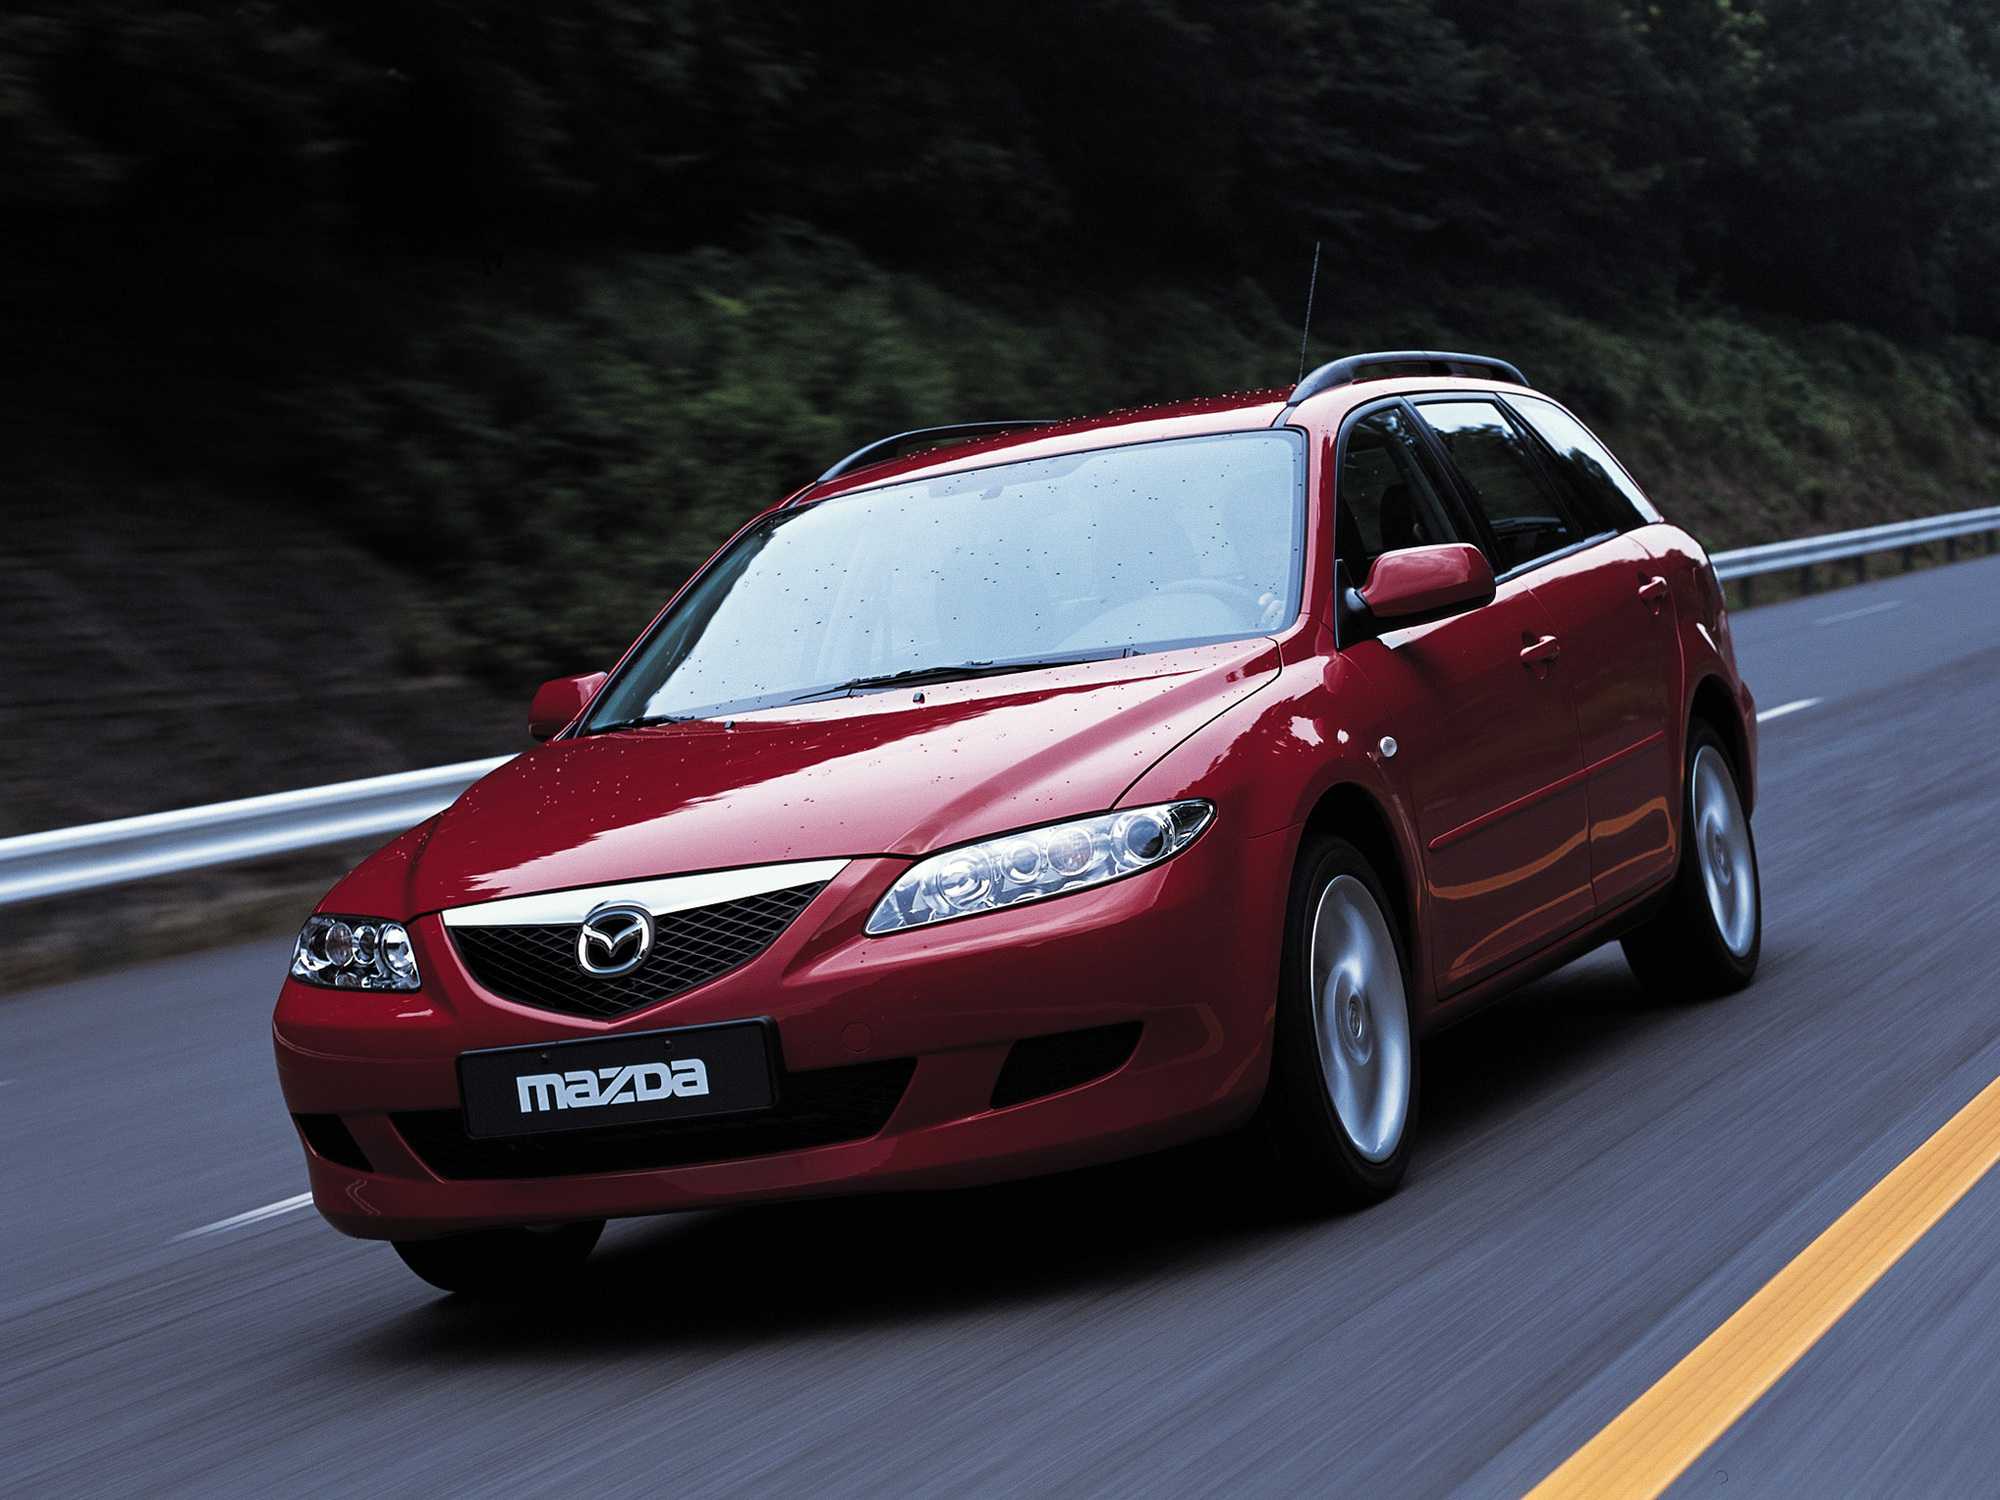 Mazda mazda6 2010 год, 2.5 литра, всем привет, пермь, бензин, передний привод, автоматическая коробка, расход об этом ниже, цвет серый